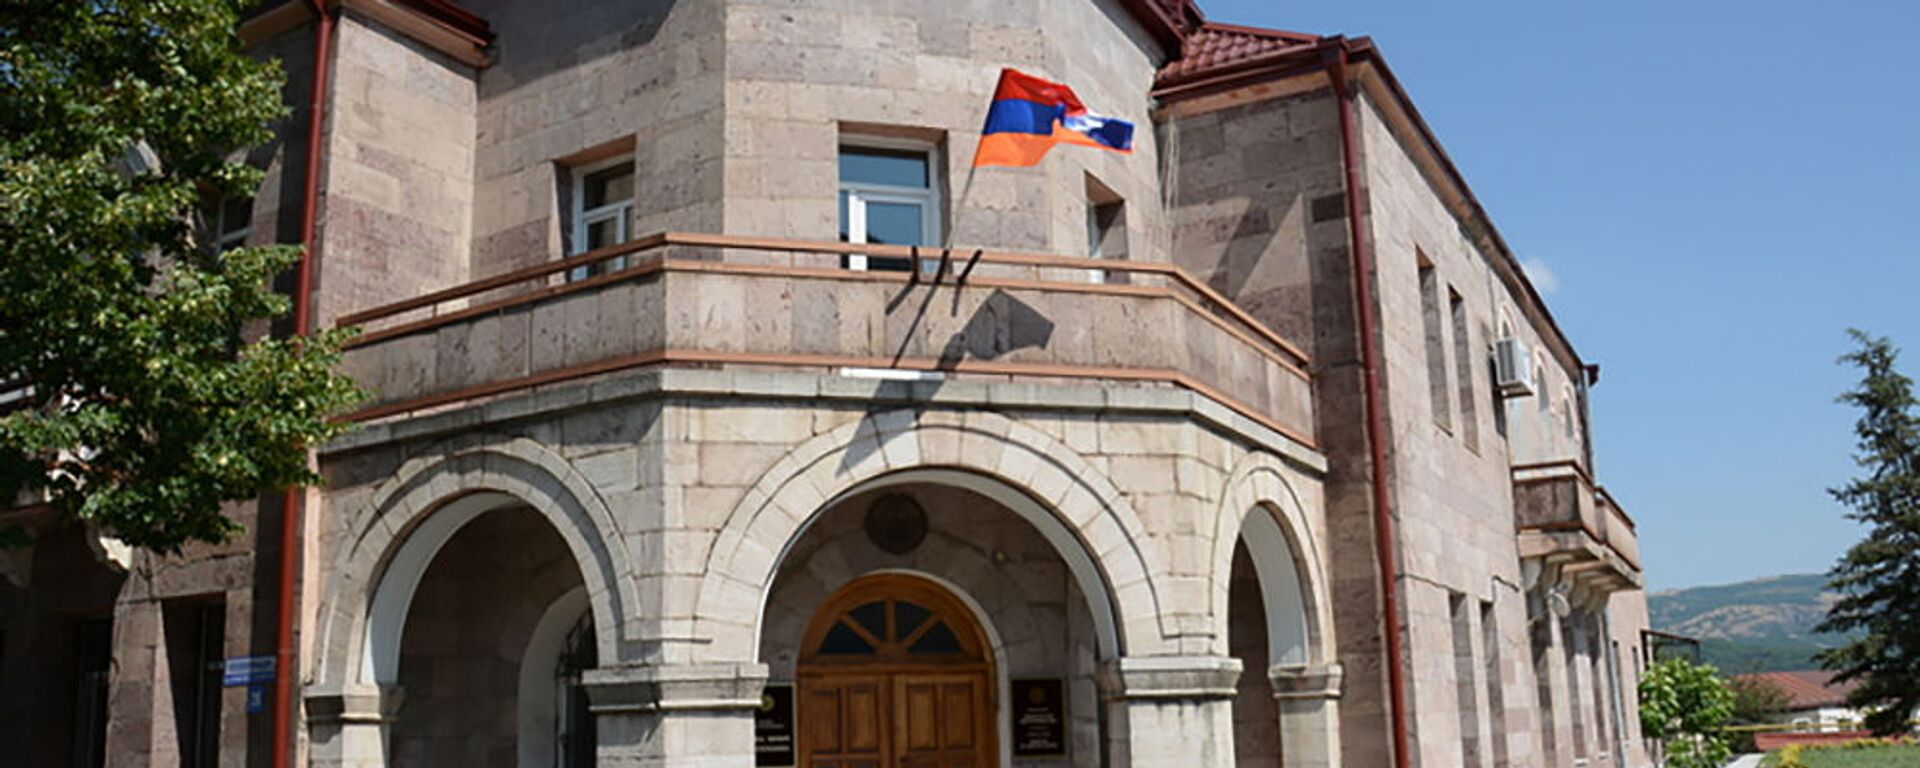 Здание Министерства иностранных дел Карабаха - Sputnik Արմենիա, 1920, 04.02.2021